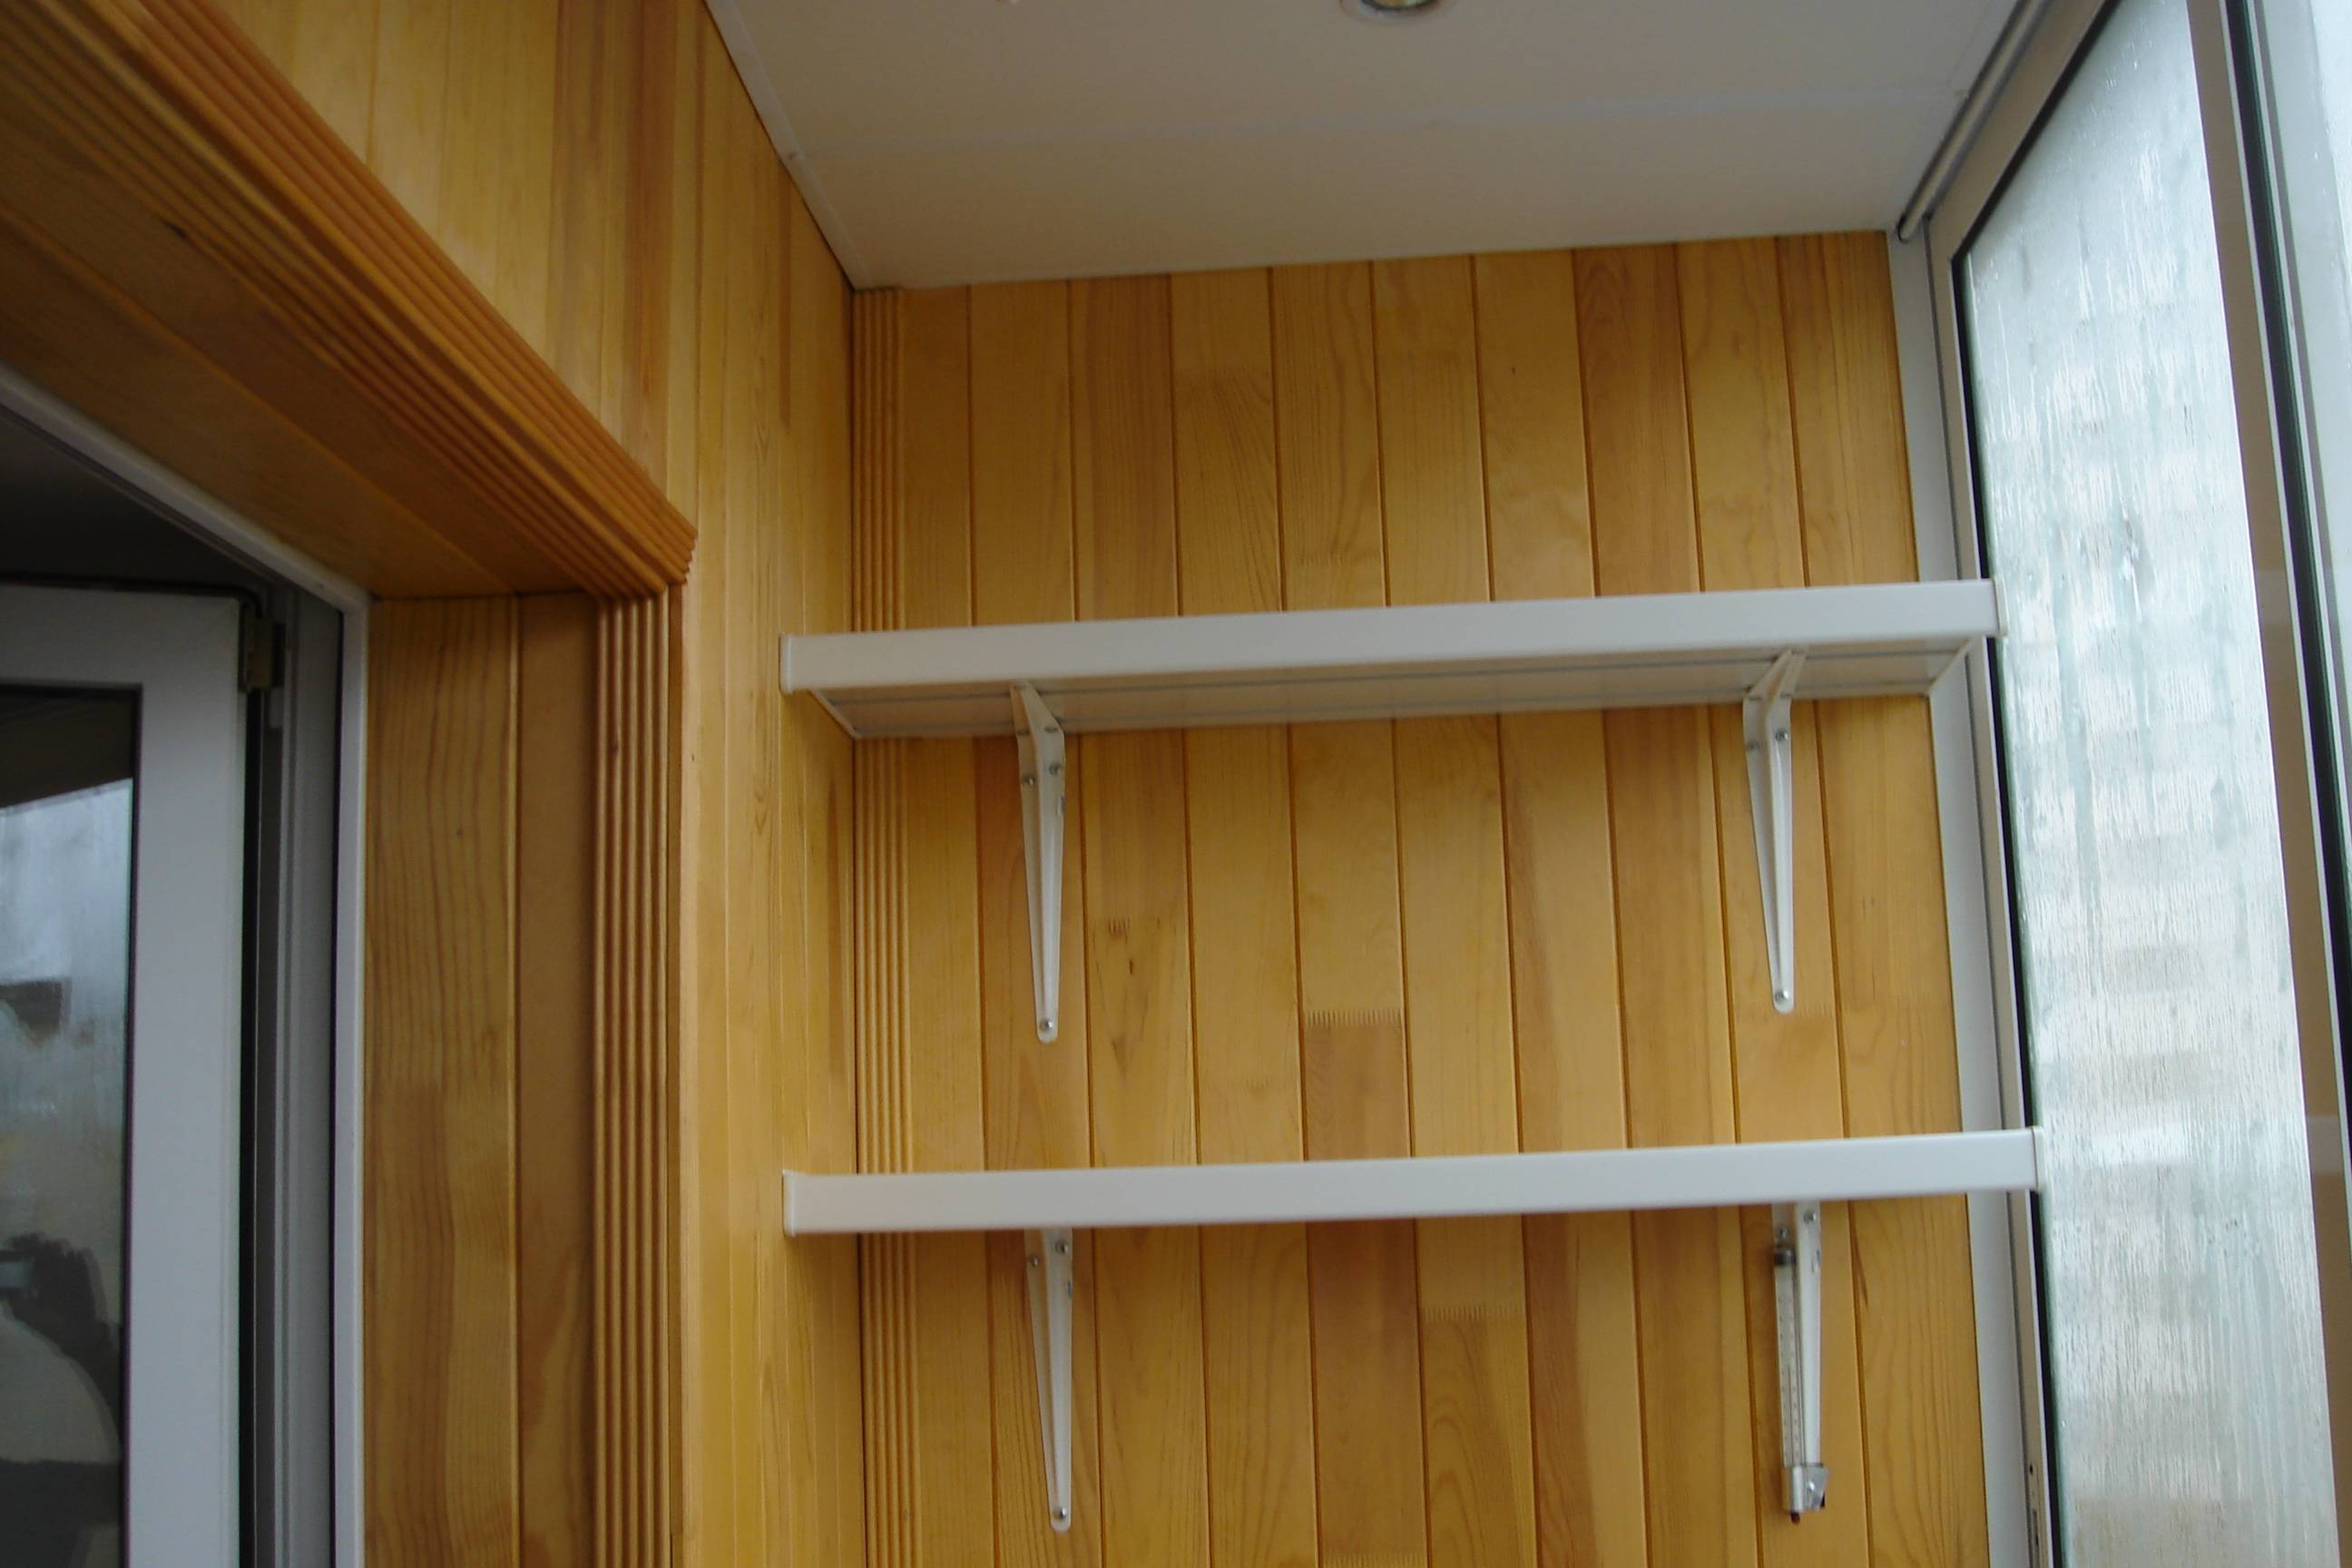 Как можно сделать шкаф на балконе своими руками дешево и красиво